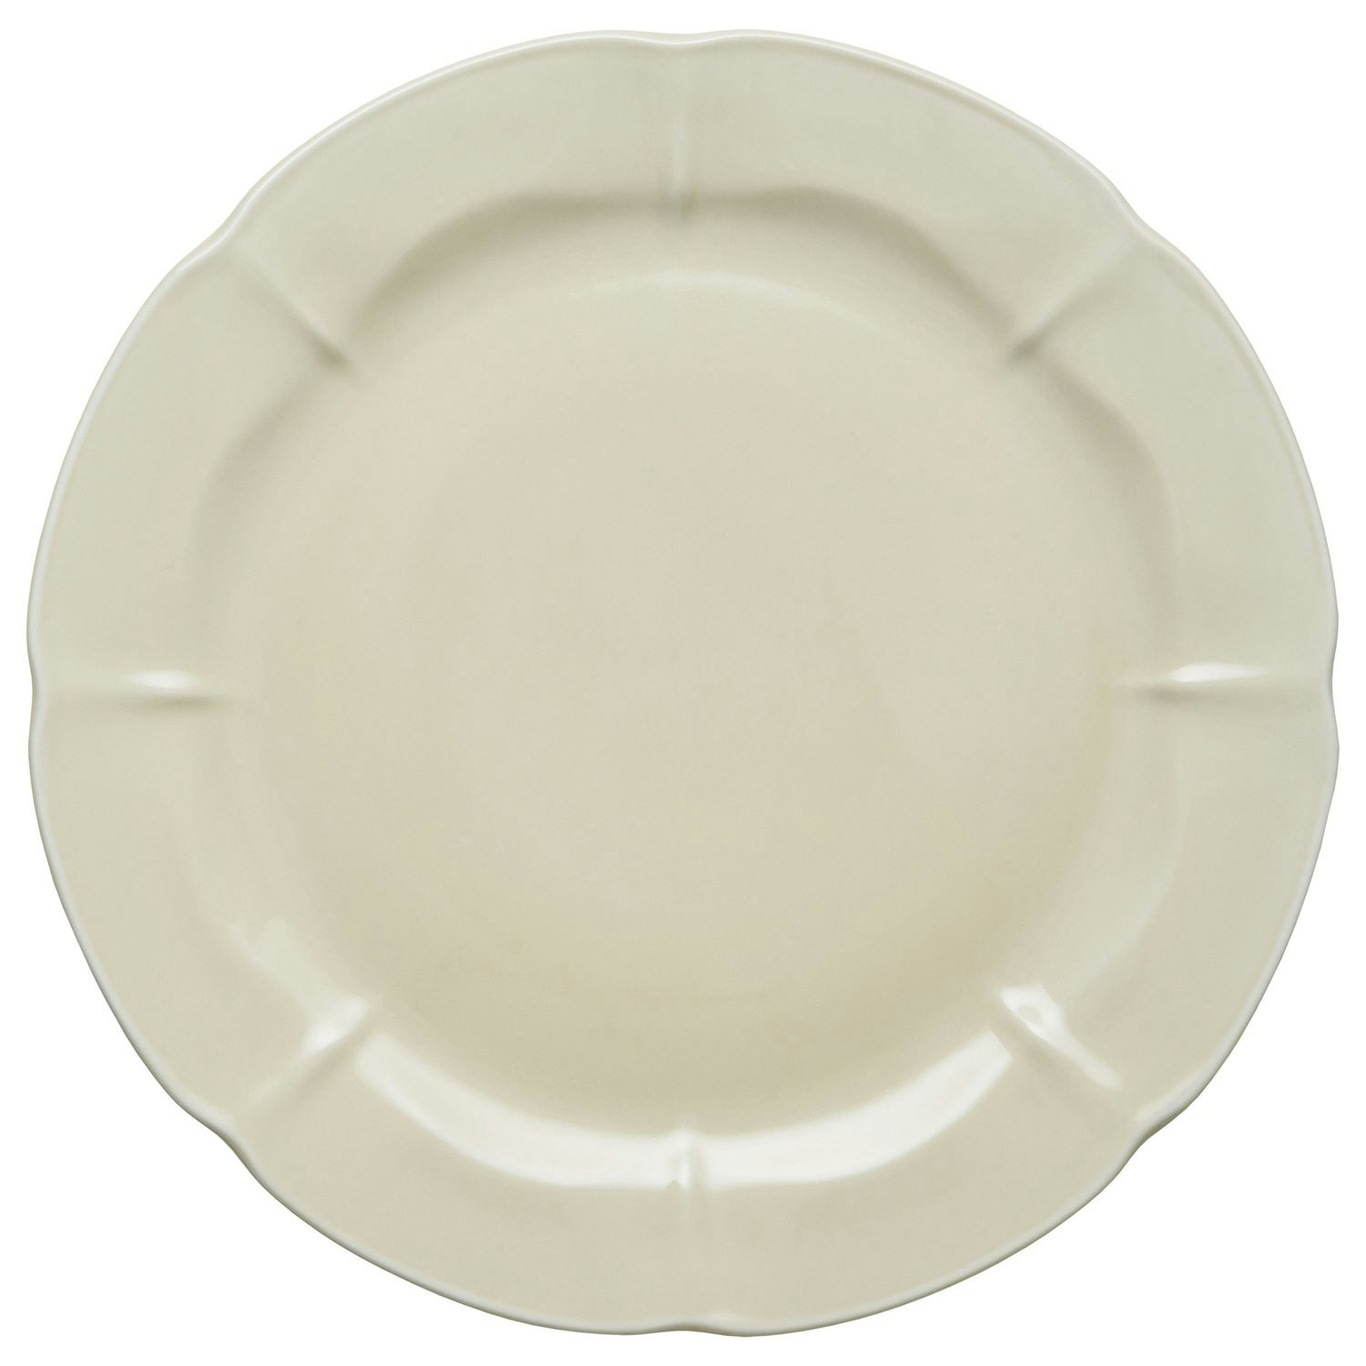 Søholm Solvej Lunch Plate 26,5 cm, Creamy Sand